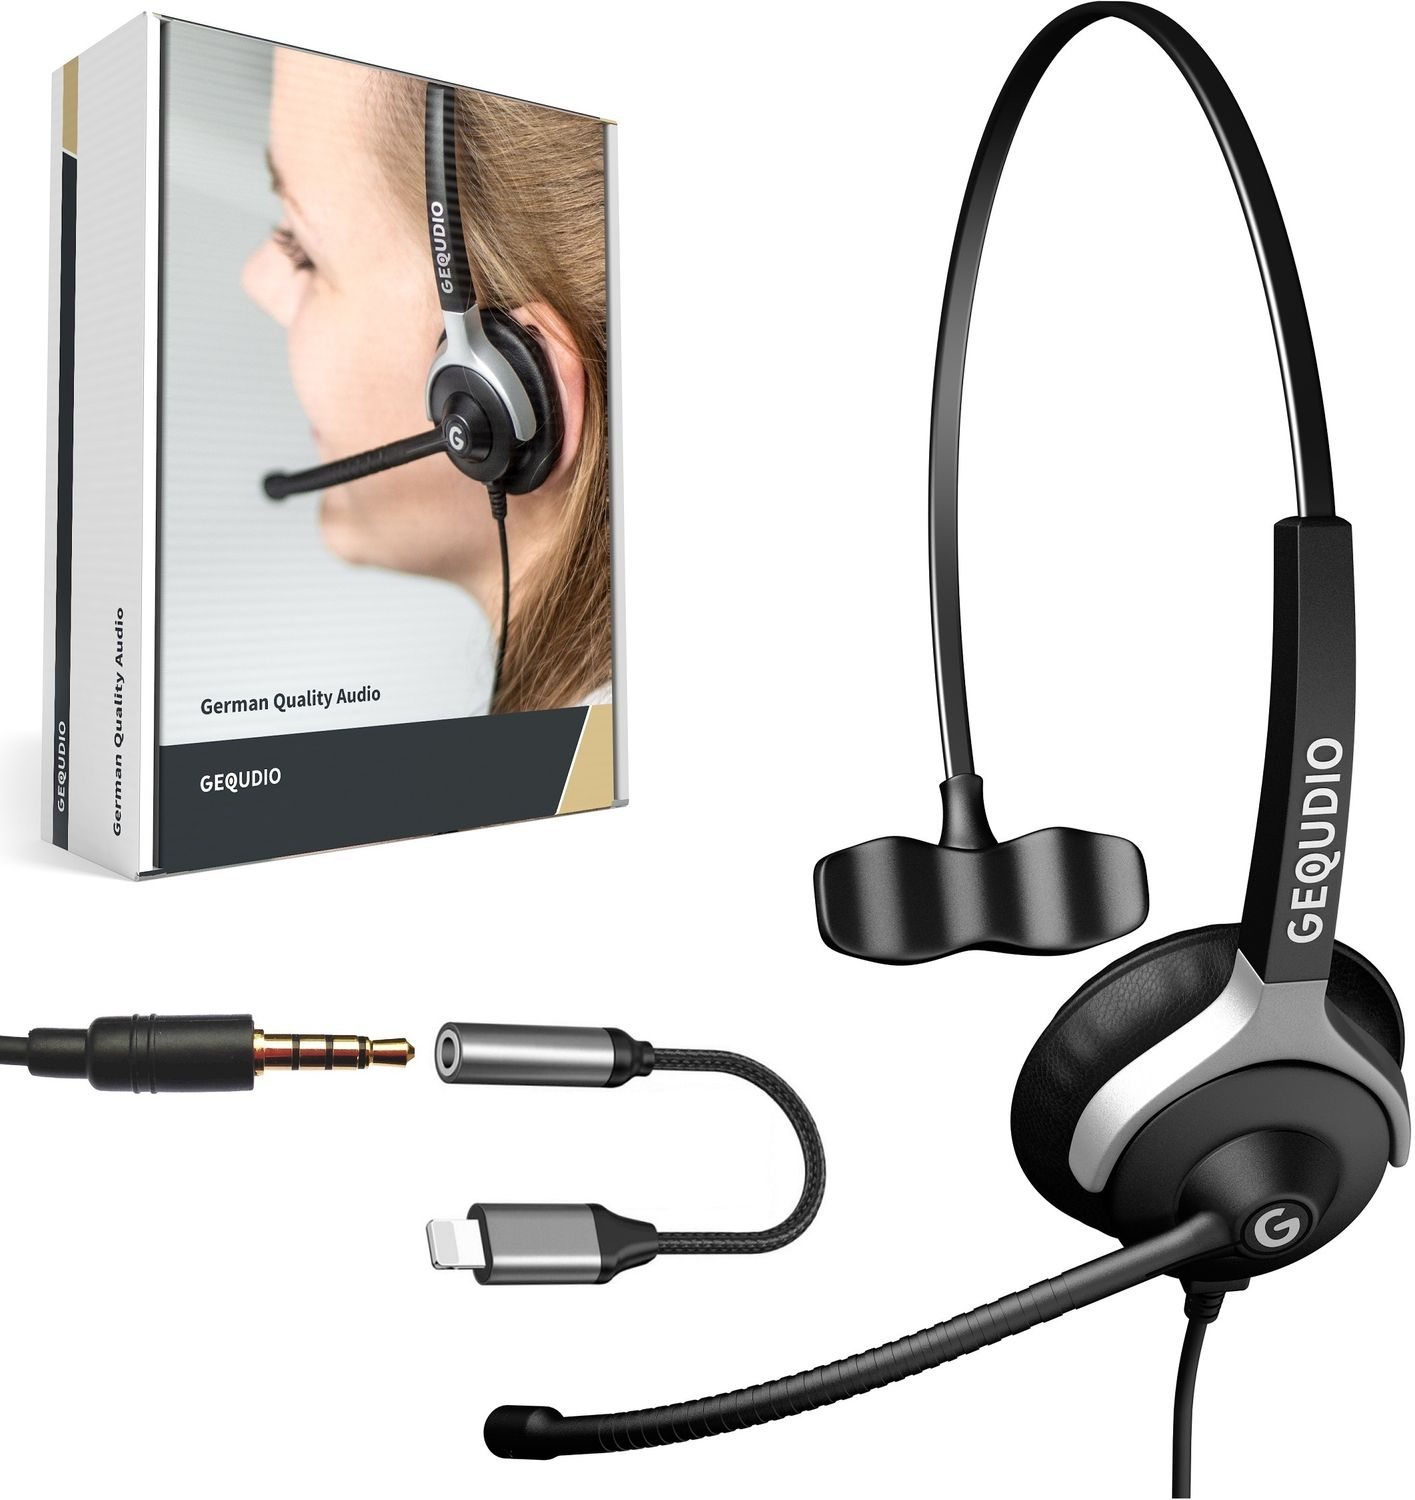 GEQUDIO Headset 1-Ohr mit Headset On-ear Klinke 3,5mm Schwarz und Kabel-Adapter